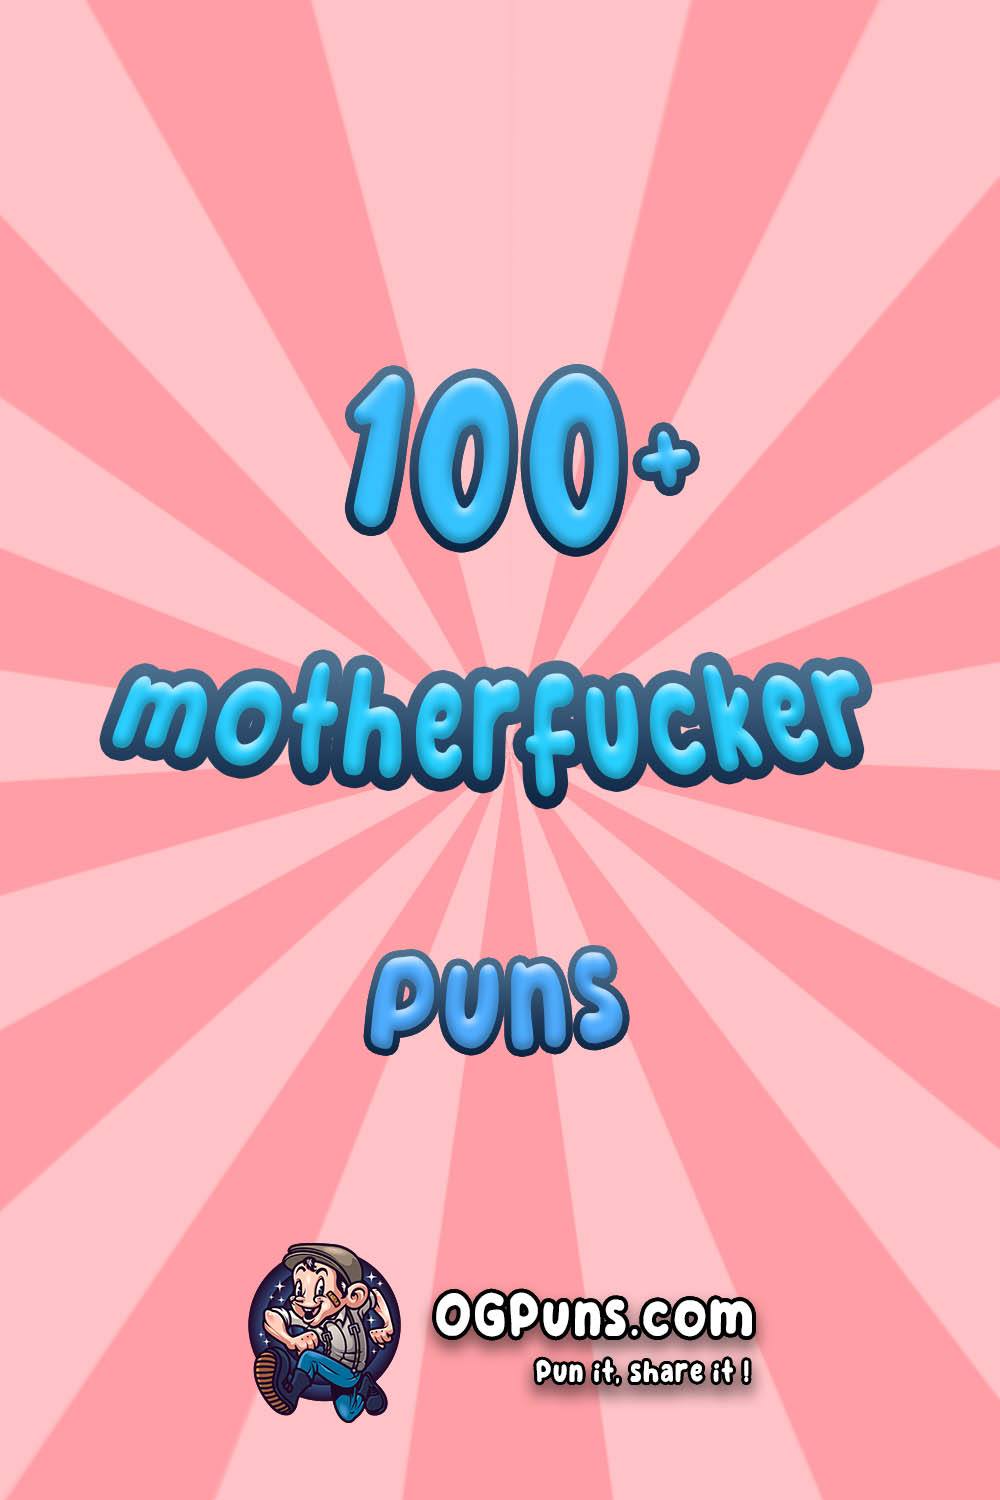 Motherfucker puns Image for Pinterest